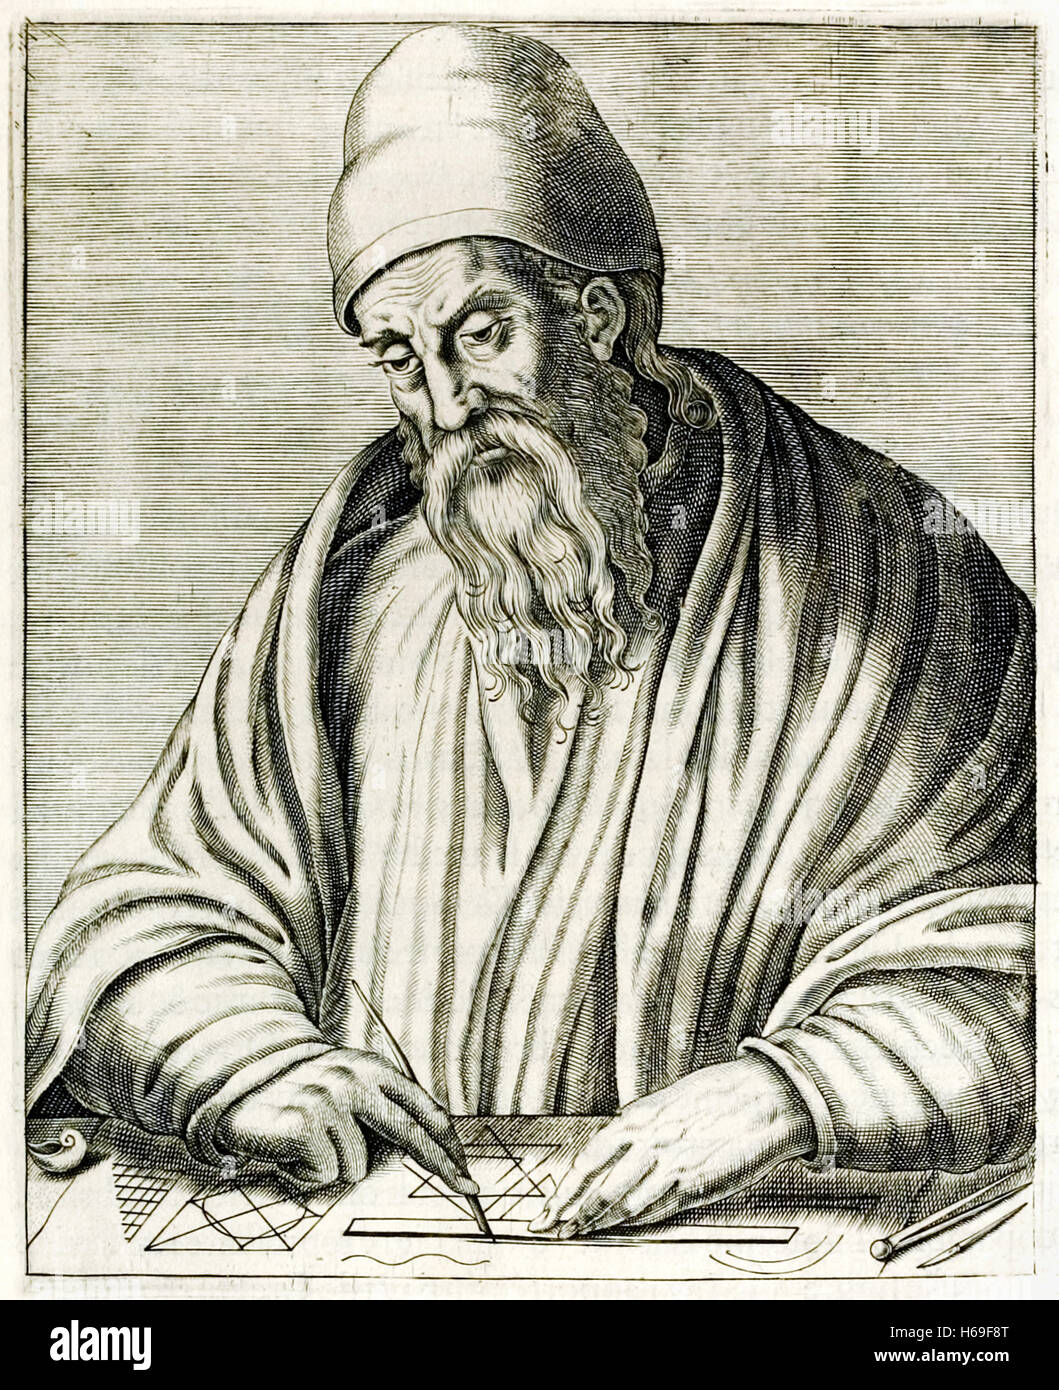 Griechischer Mathematiker Euklid von Alexandria (450-350BC), der "Elemente" eines der einflussreichsten Werke in der Geschichte der Mathematik schrieb. Kupferstich von Frère André Thévet (1516-1590) veröffentlichte im Jahre 1584. Siehe Beschreibung für mehr Informationen. Stockfoto